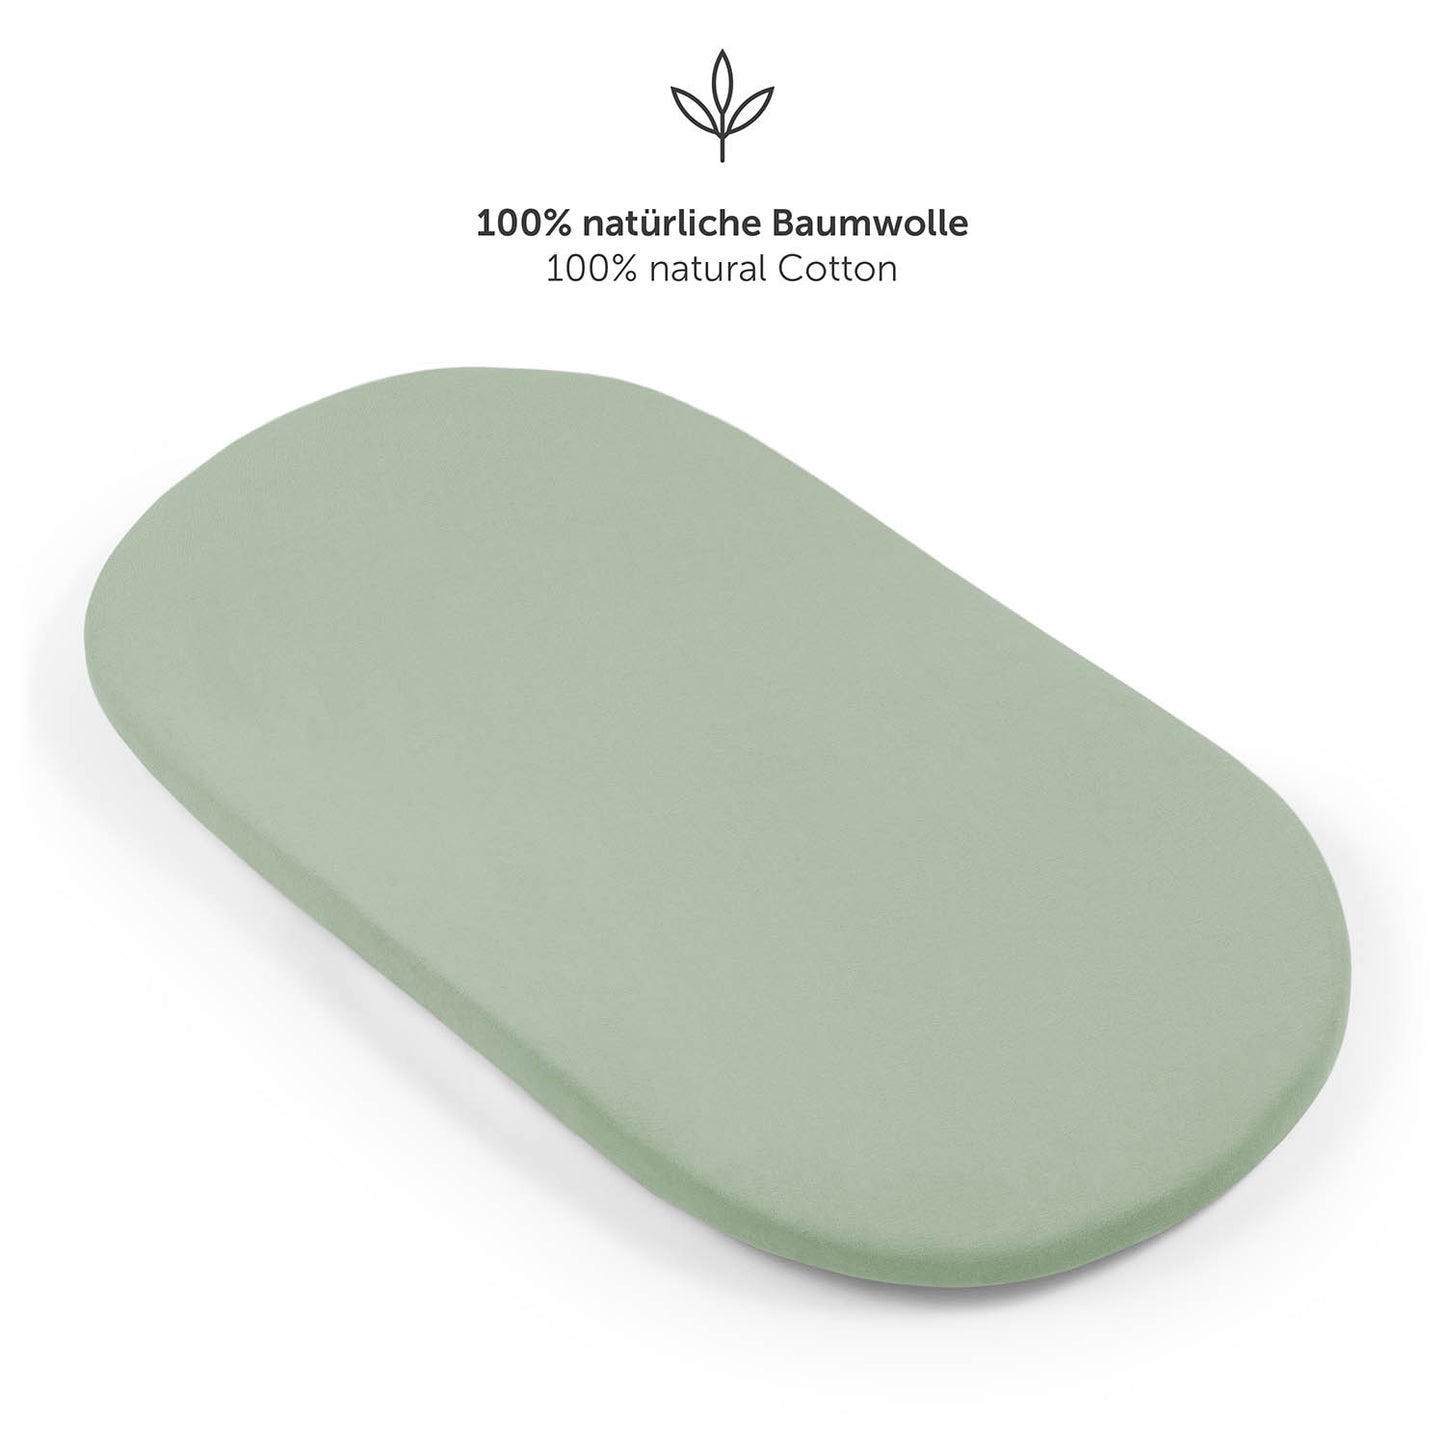 Detailansicht eines grün Spannbetttuchs mit starkem Gummizug und Zusatz von 5 cm für perfekten Sitz.